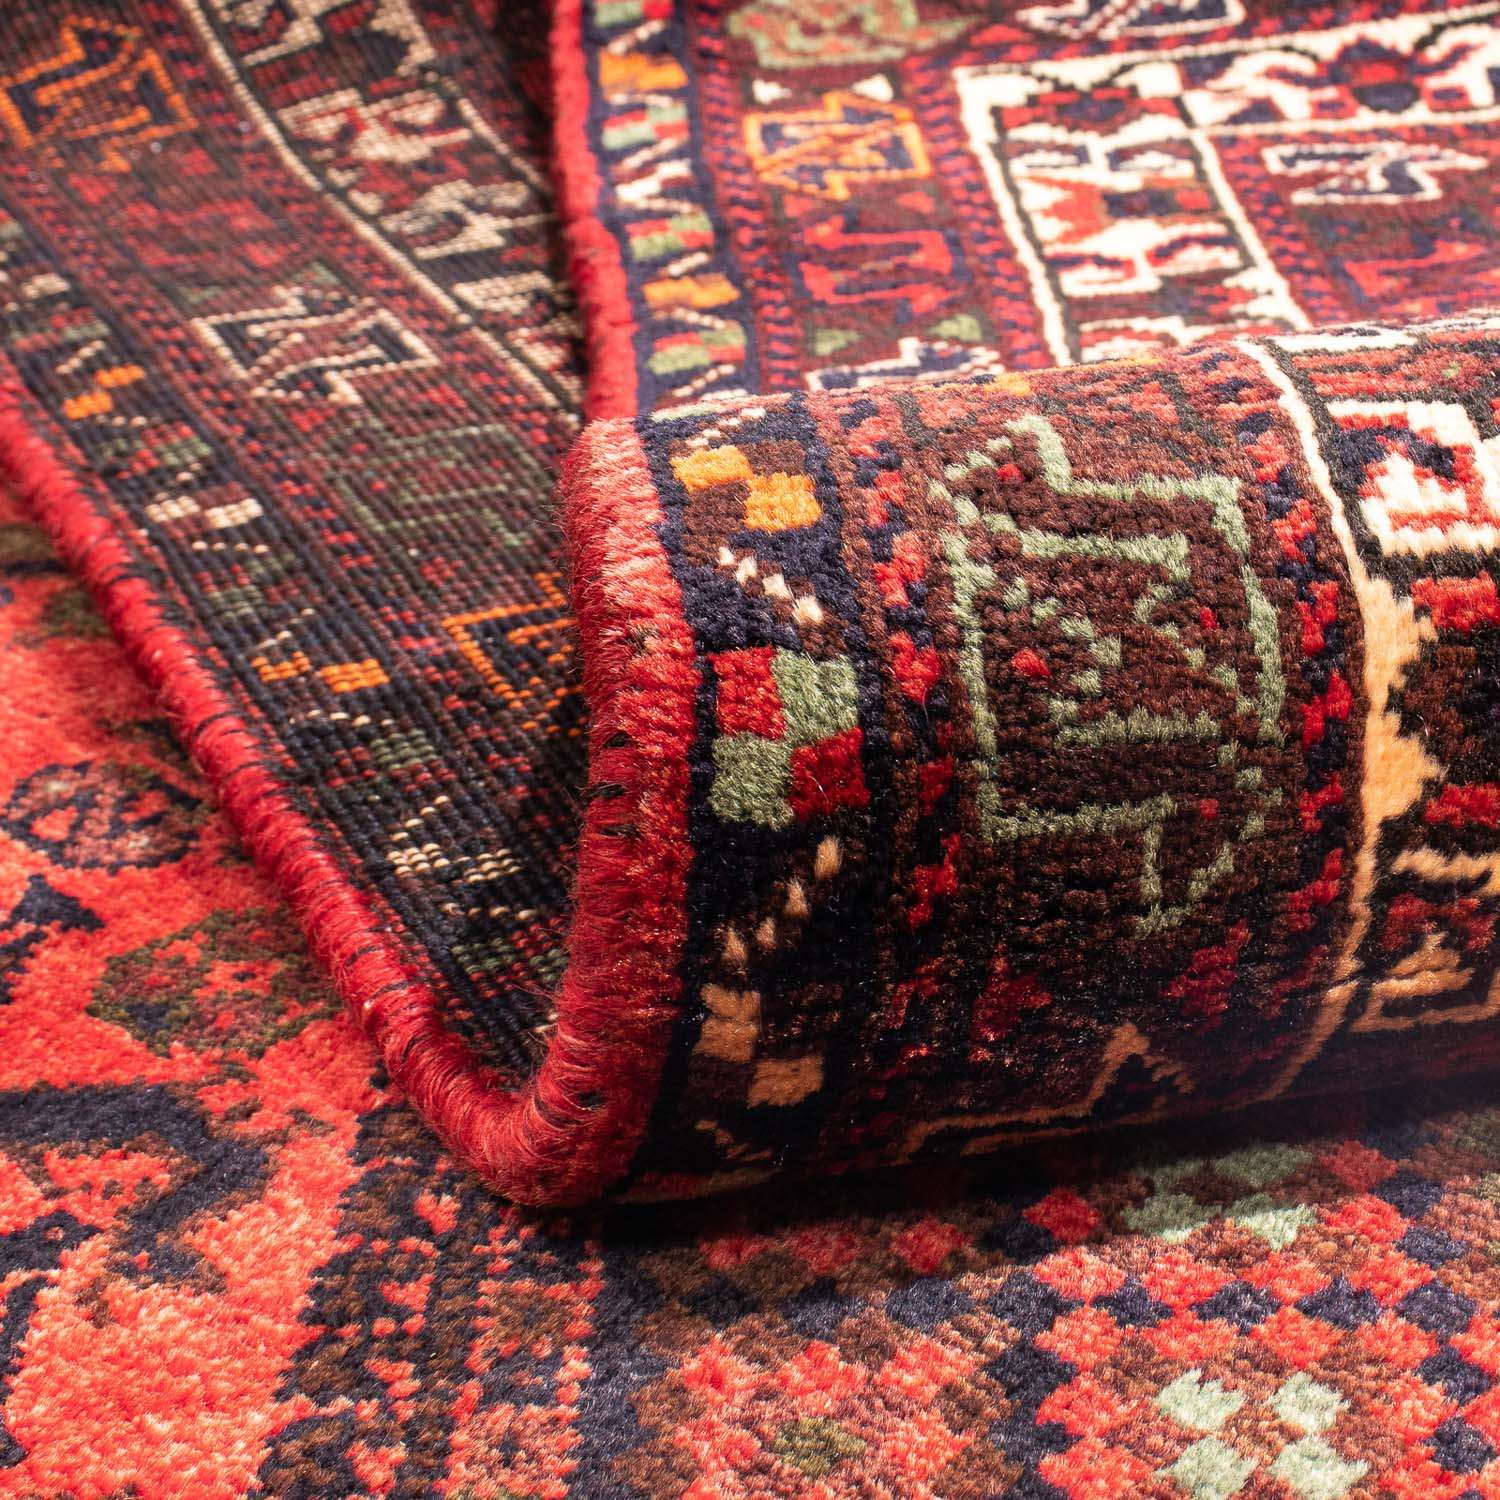 Perski dywan - Nomadyczny - 295 x 200 cm - ciemna czerwień